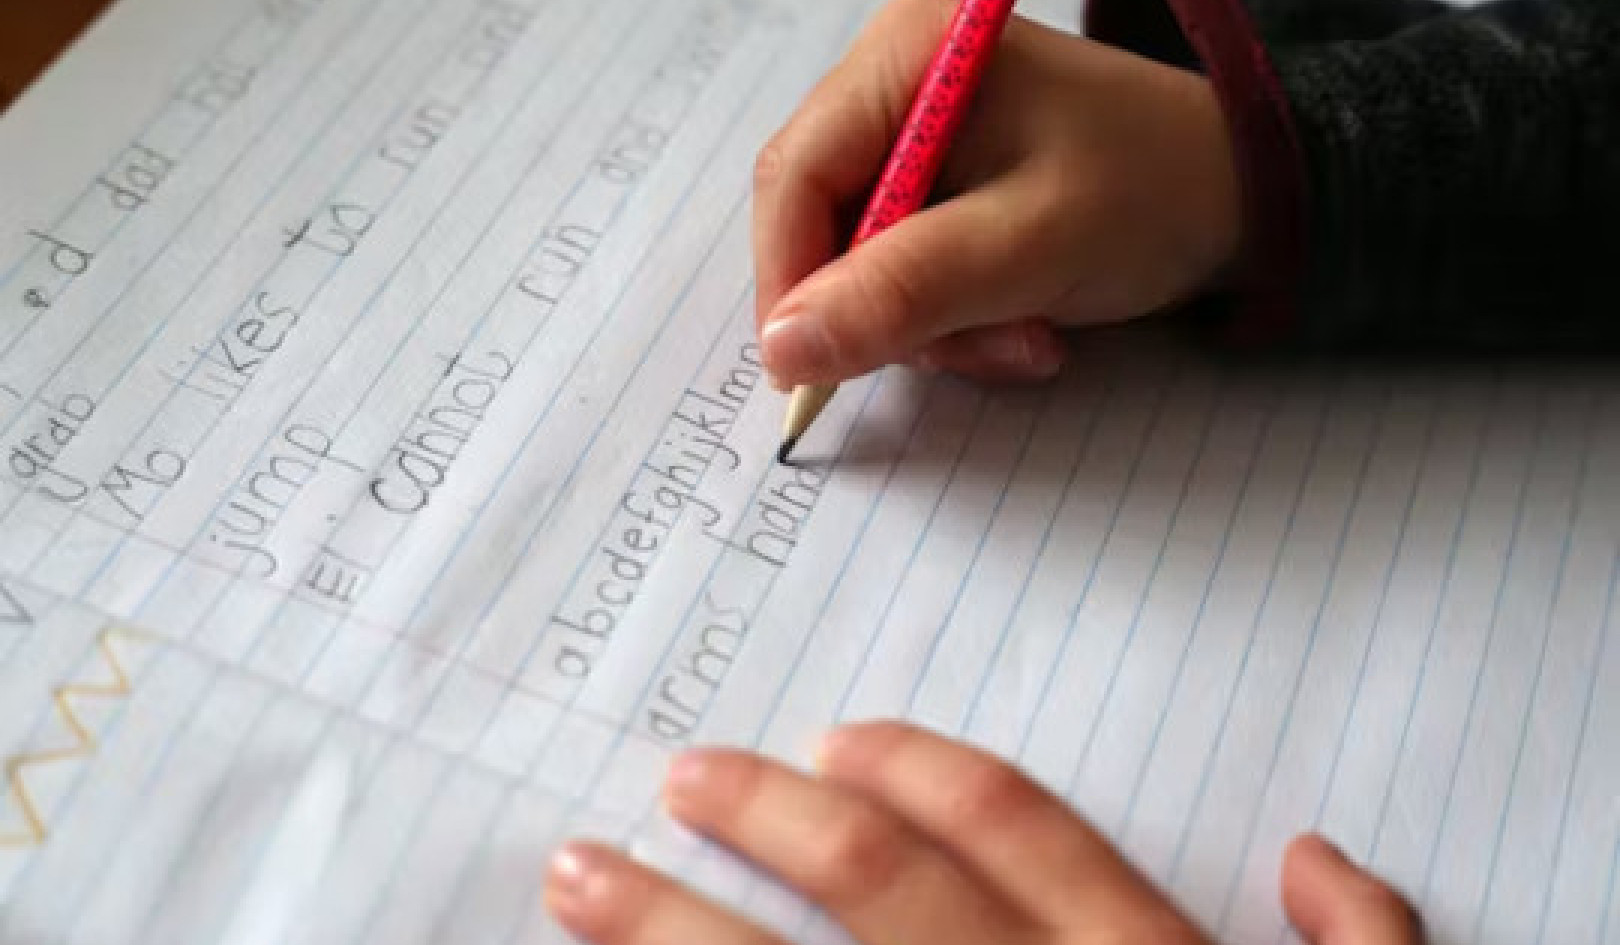 El Yazısının Önemi: Çocukların Hala El Yazısı Öğrenmesi Gereken 5 Neden